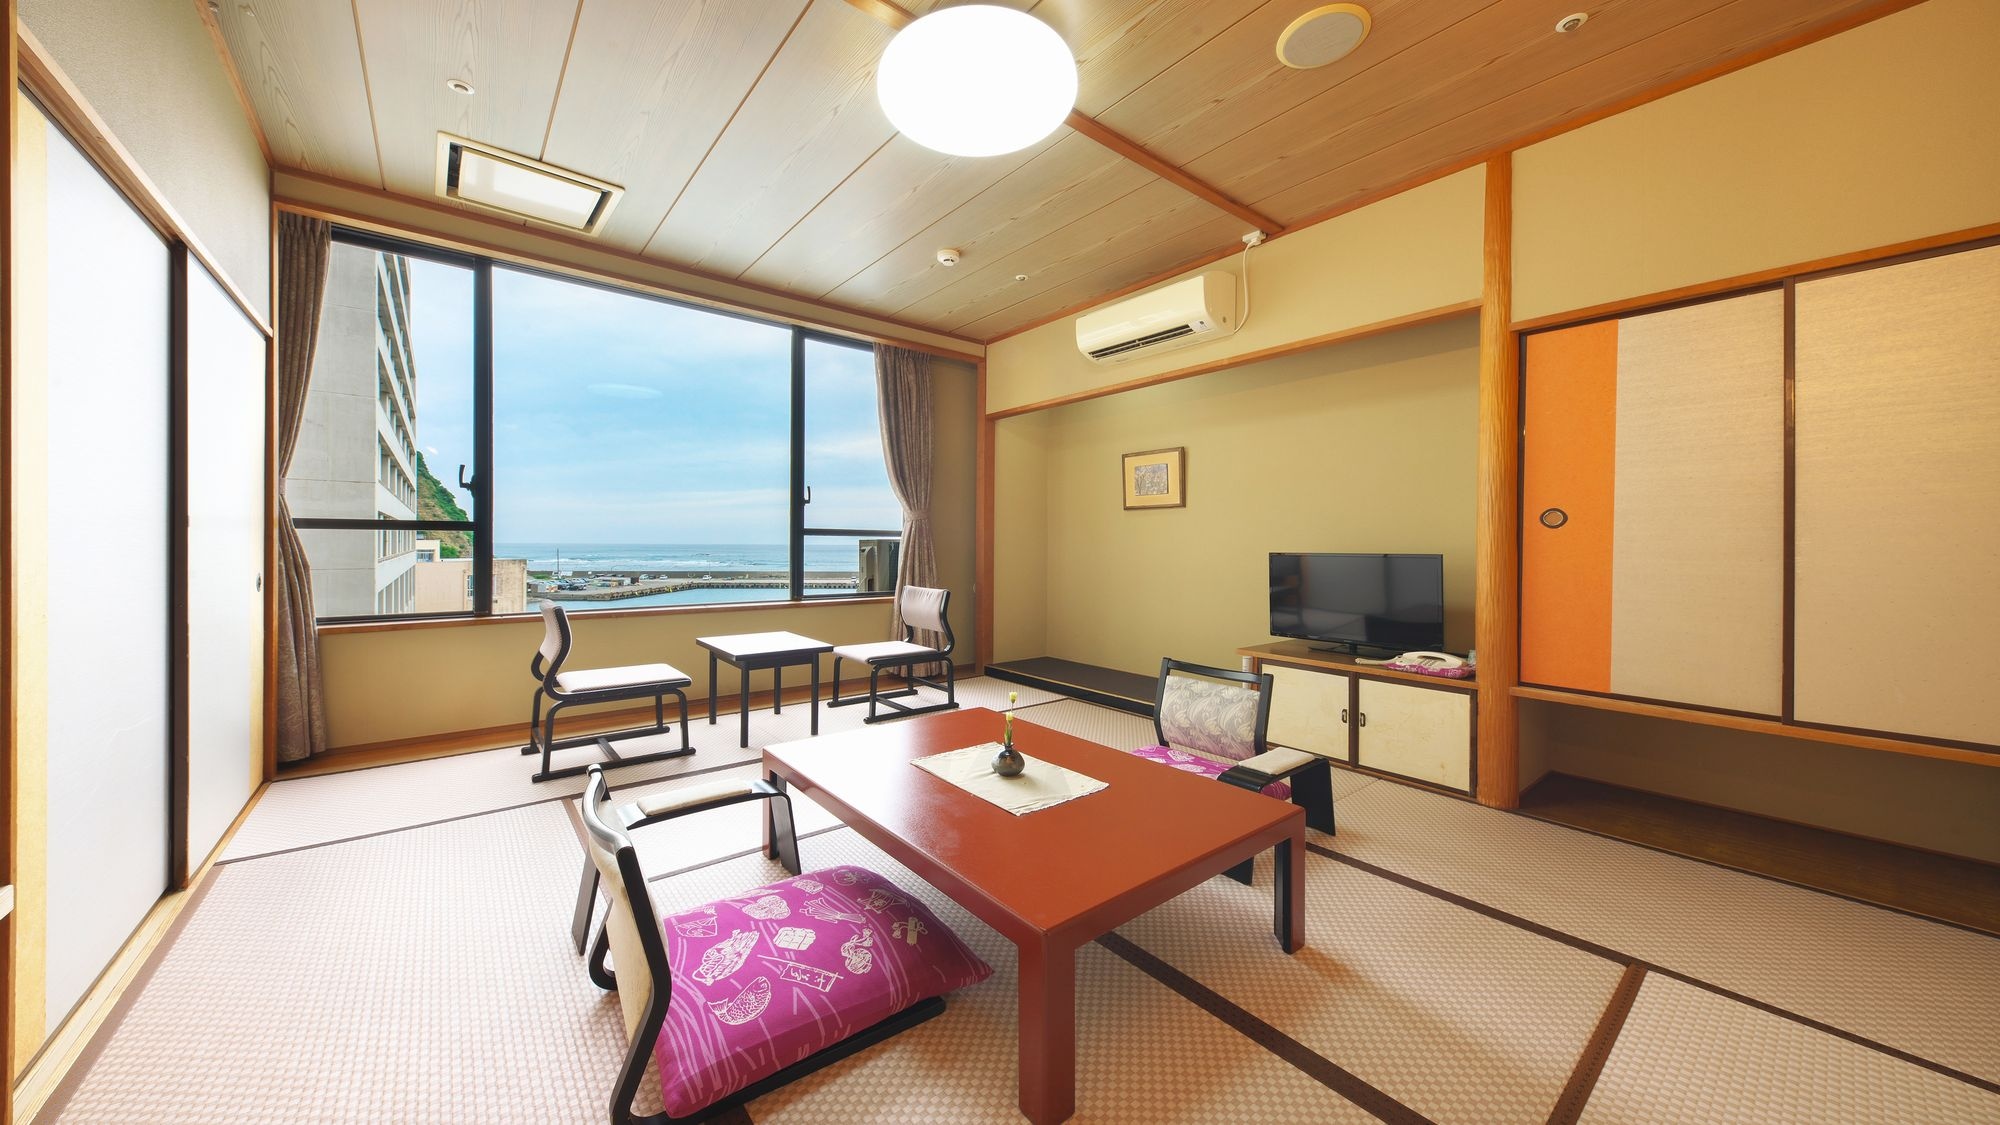  [夢亭] 海邊的日式房間 10張榻榻米 <海景> 我們將準備一個溫暖的日式房間類型。